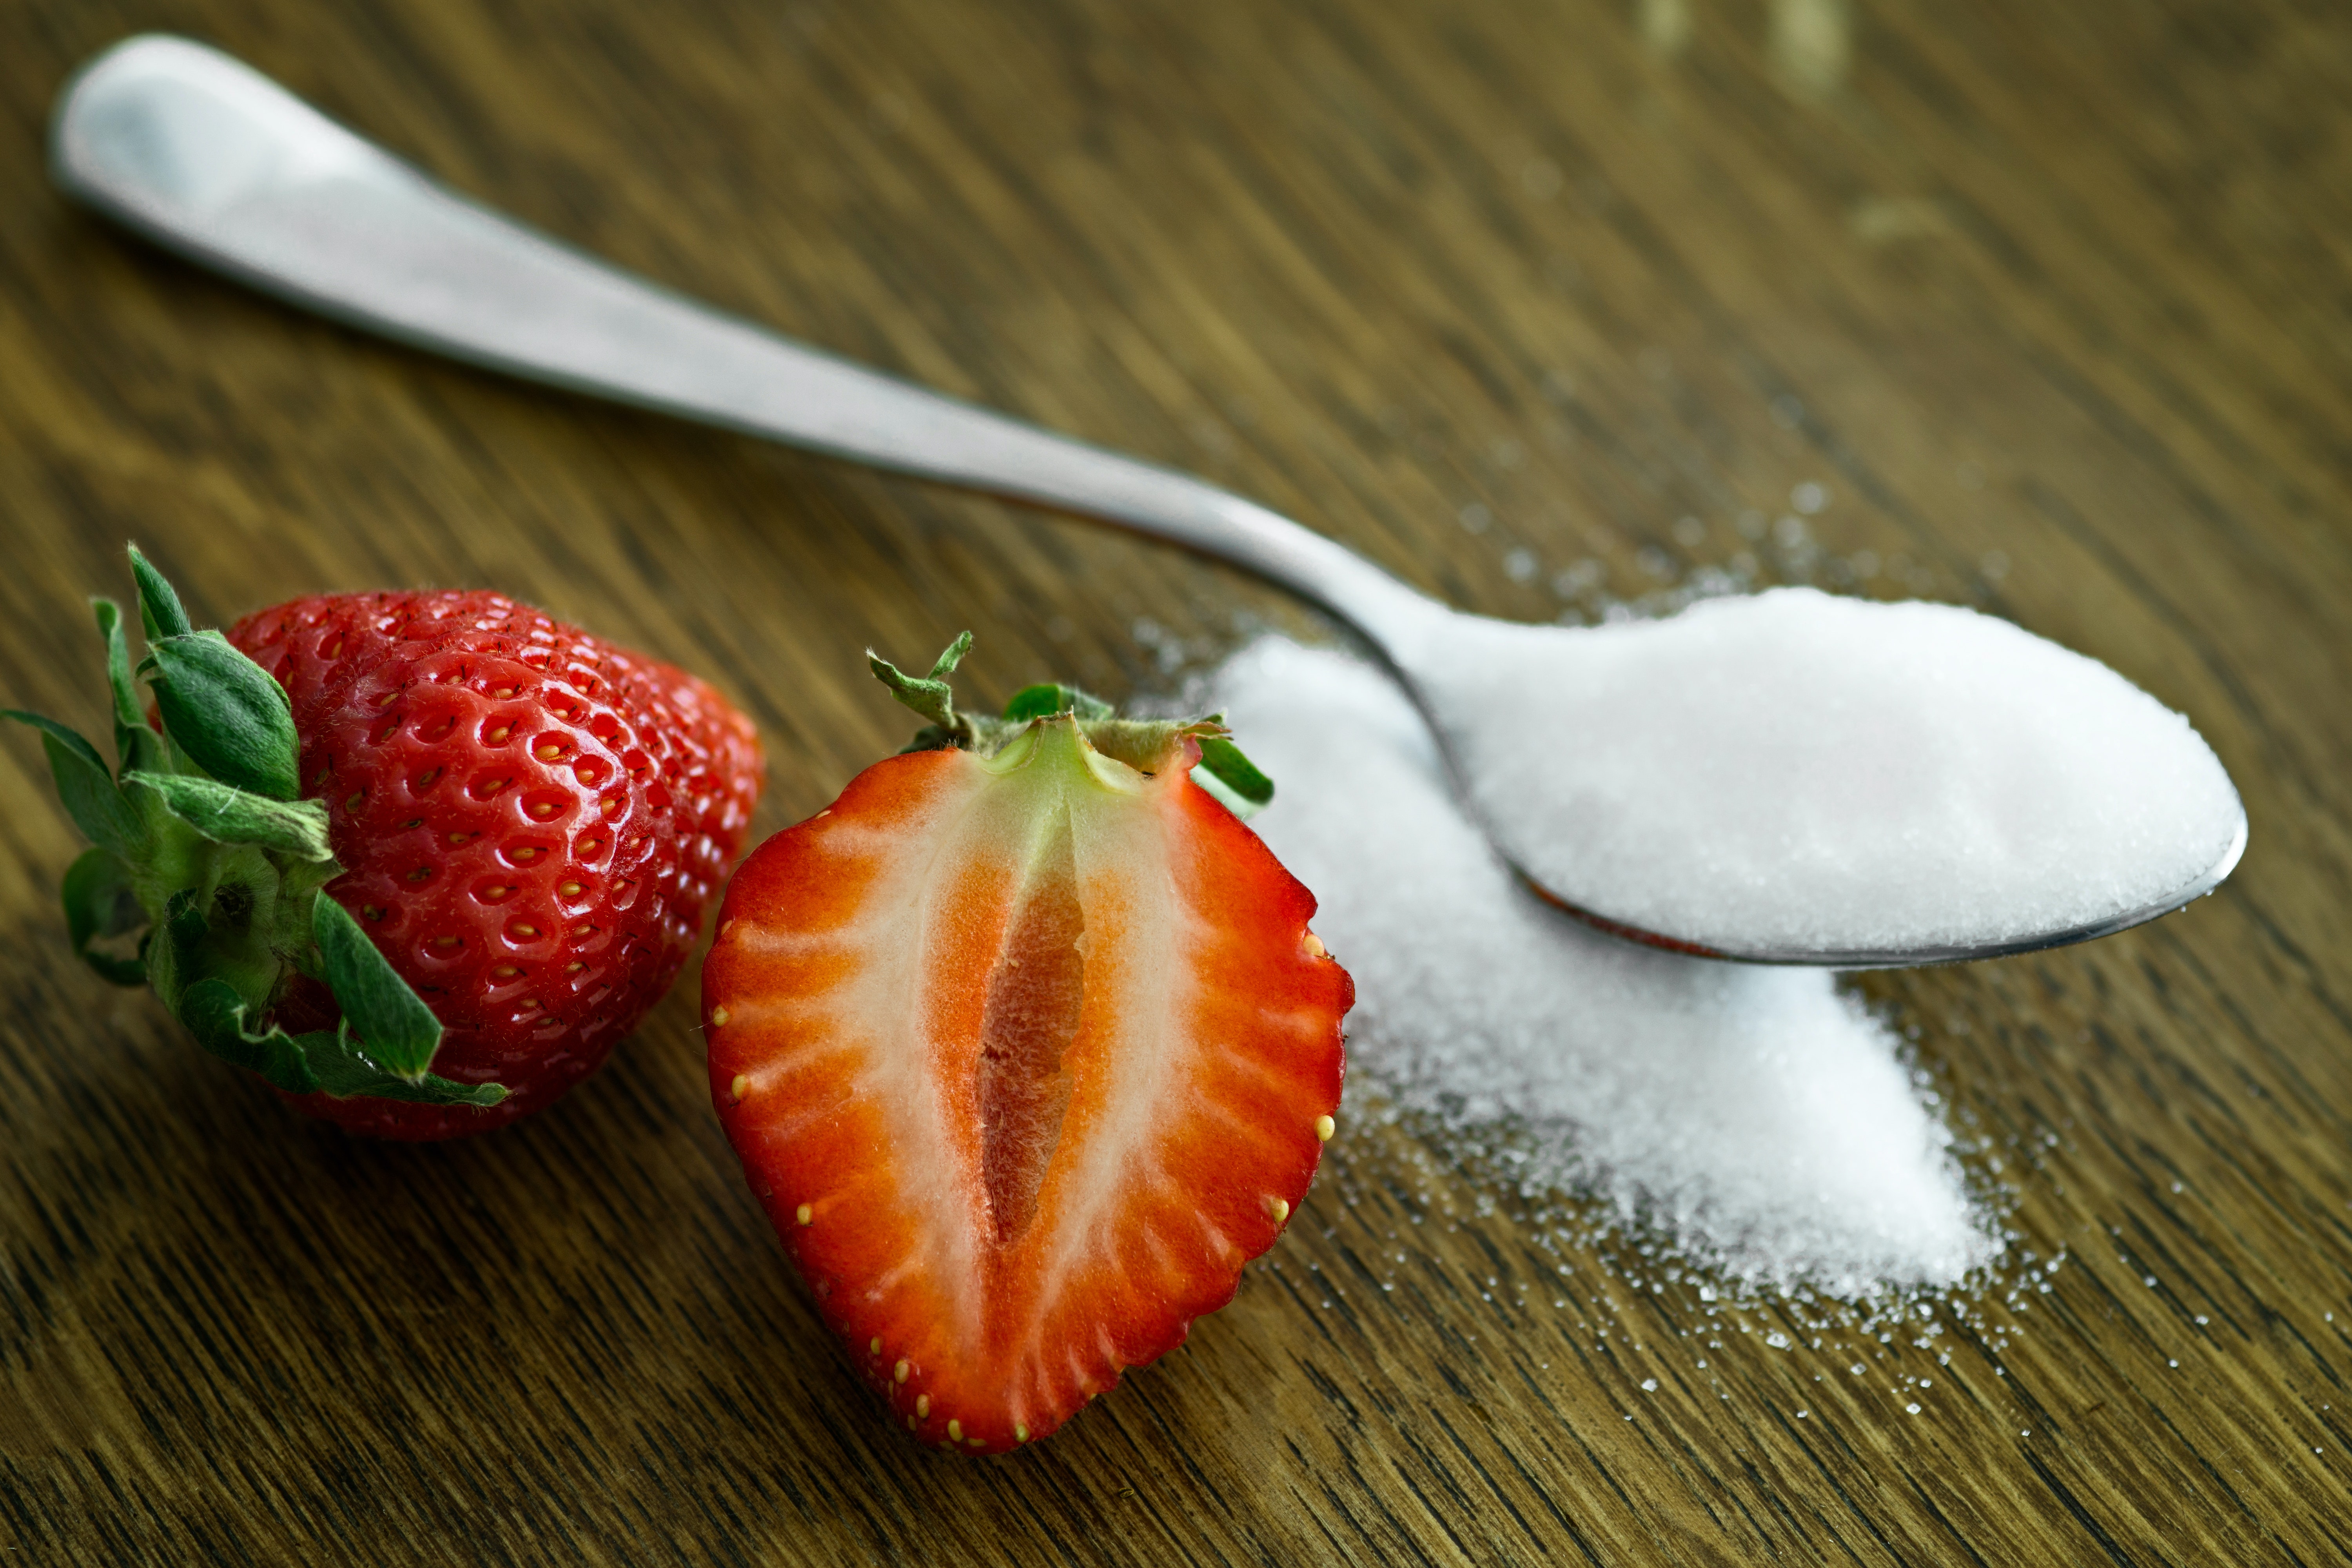 High Use of Sugar Can Destroy Mental Health